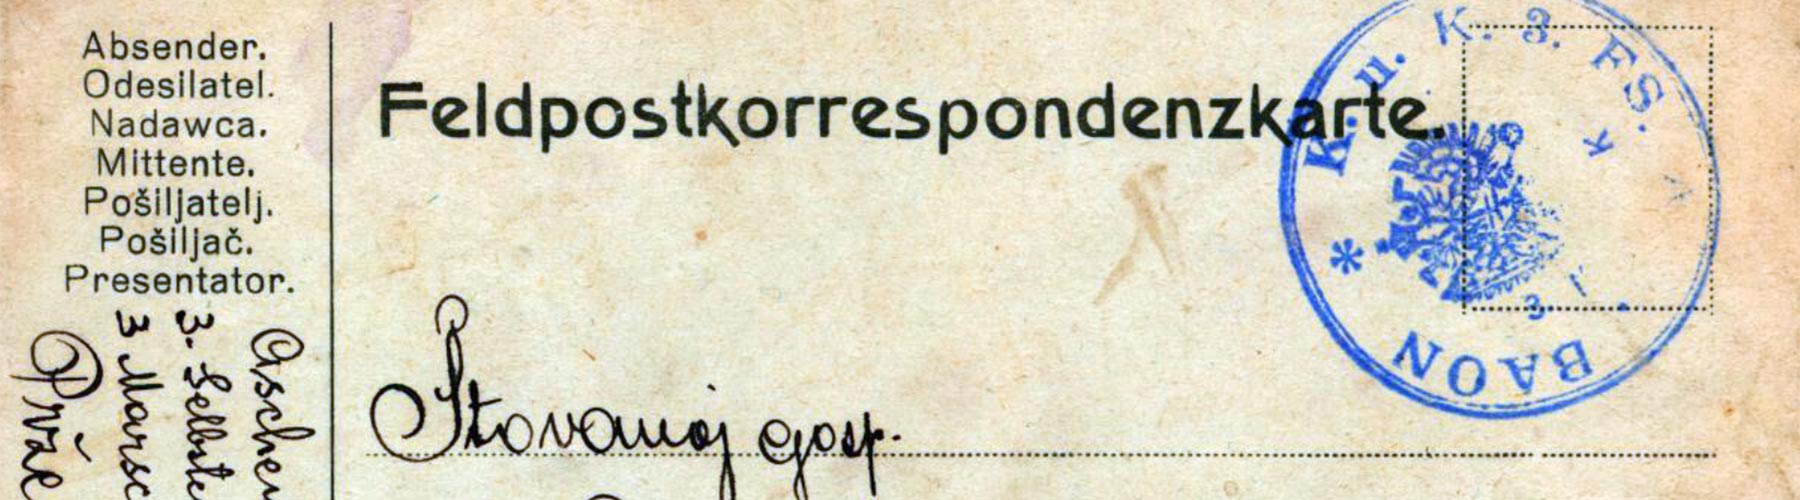 Pisma iz zarobljeništva (I. svjetski rat 1914.-1918.)